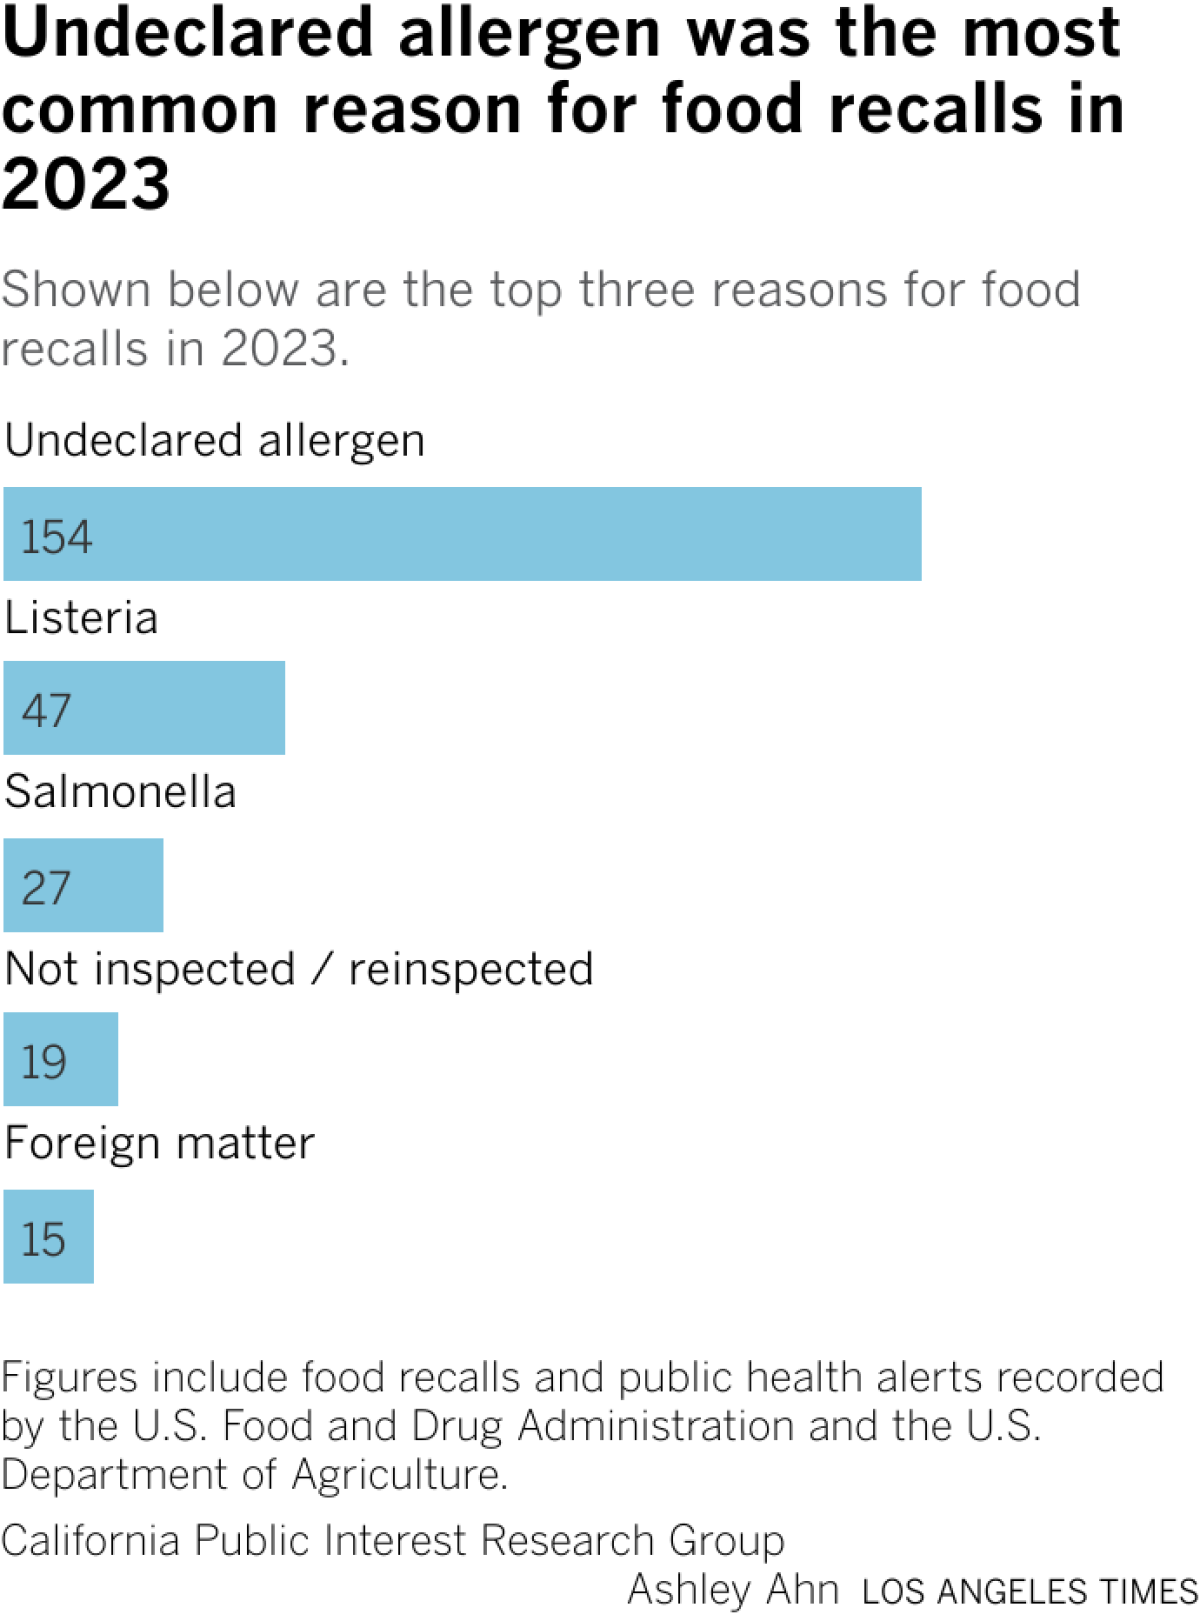 Der häufigste Grund für Lebensmittelrückrufe im Jahr 2023 war ein nicht deklariertes Allergen, das fast die Hälfte aller Lebensmittelrückrufe ausmachte.  Es folgten Listerien und Salmonellen.  